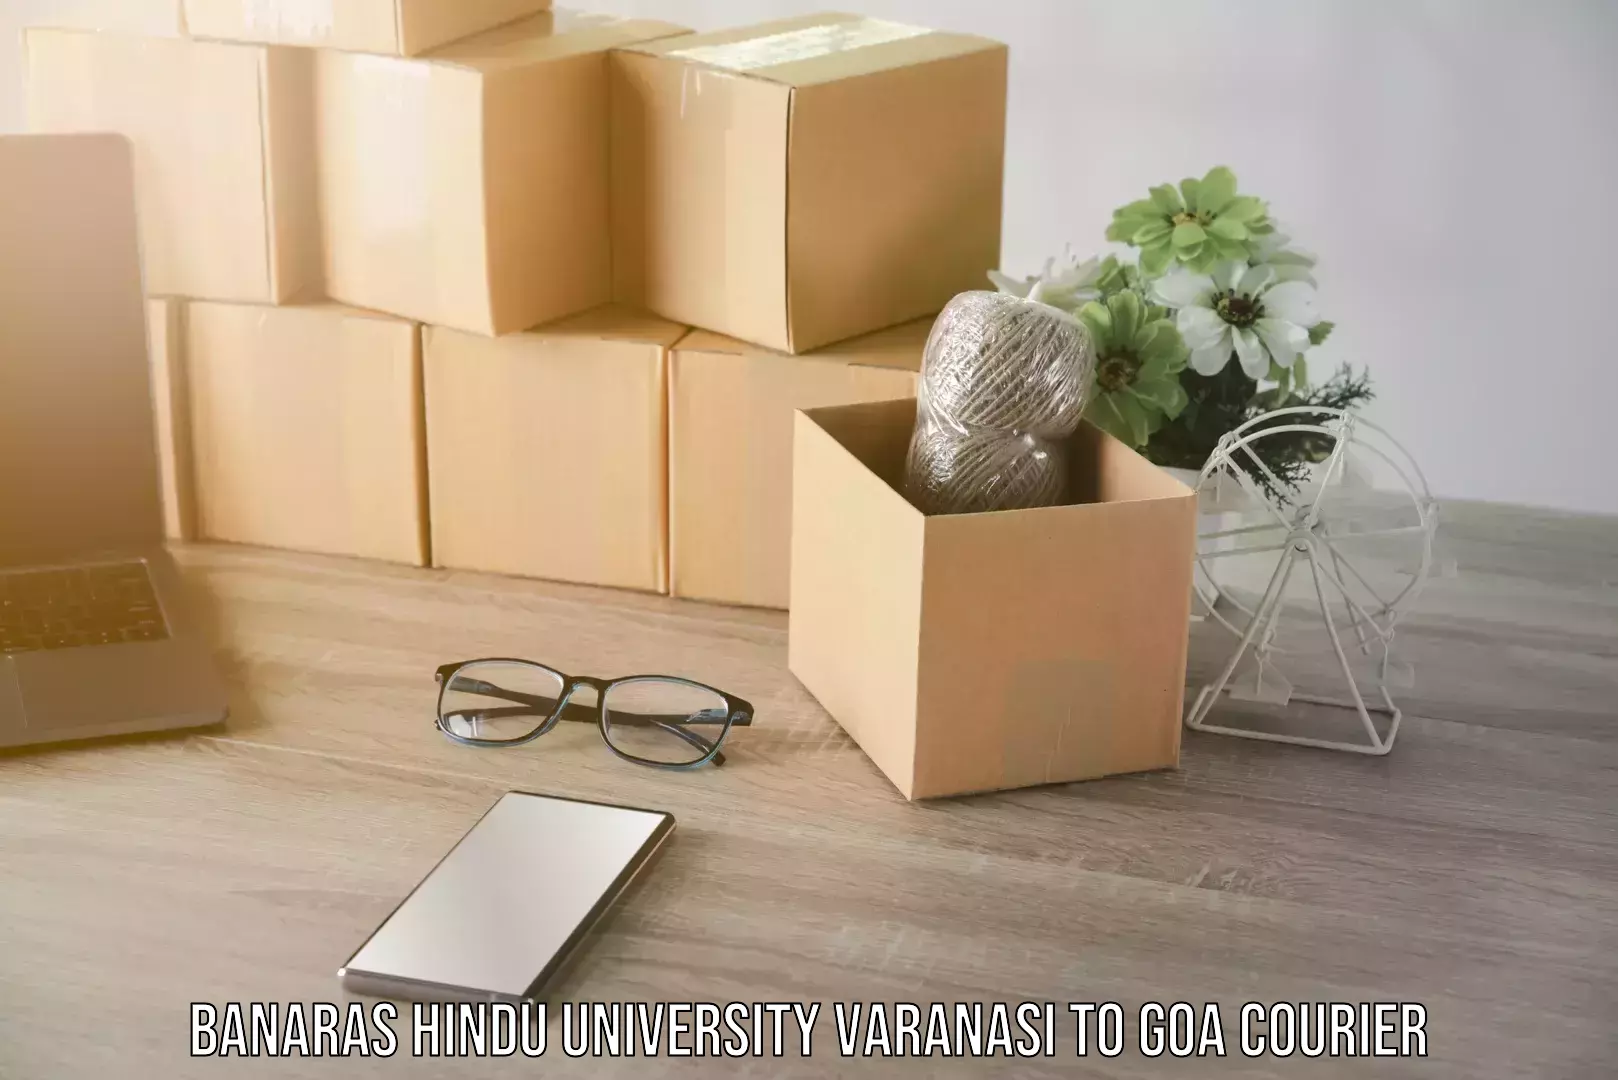 Efficient parcel transport Banaras Hindu University Varanasi to Goa